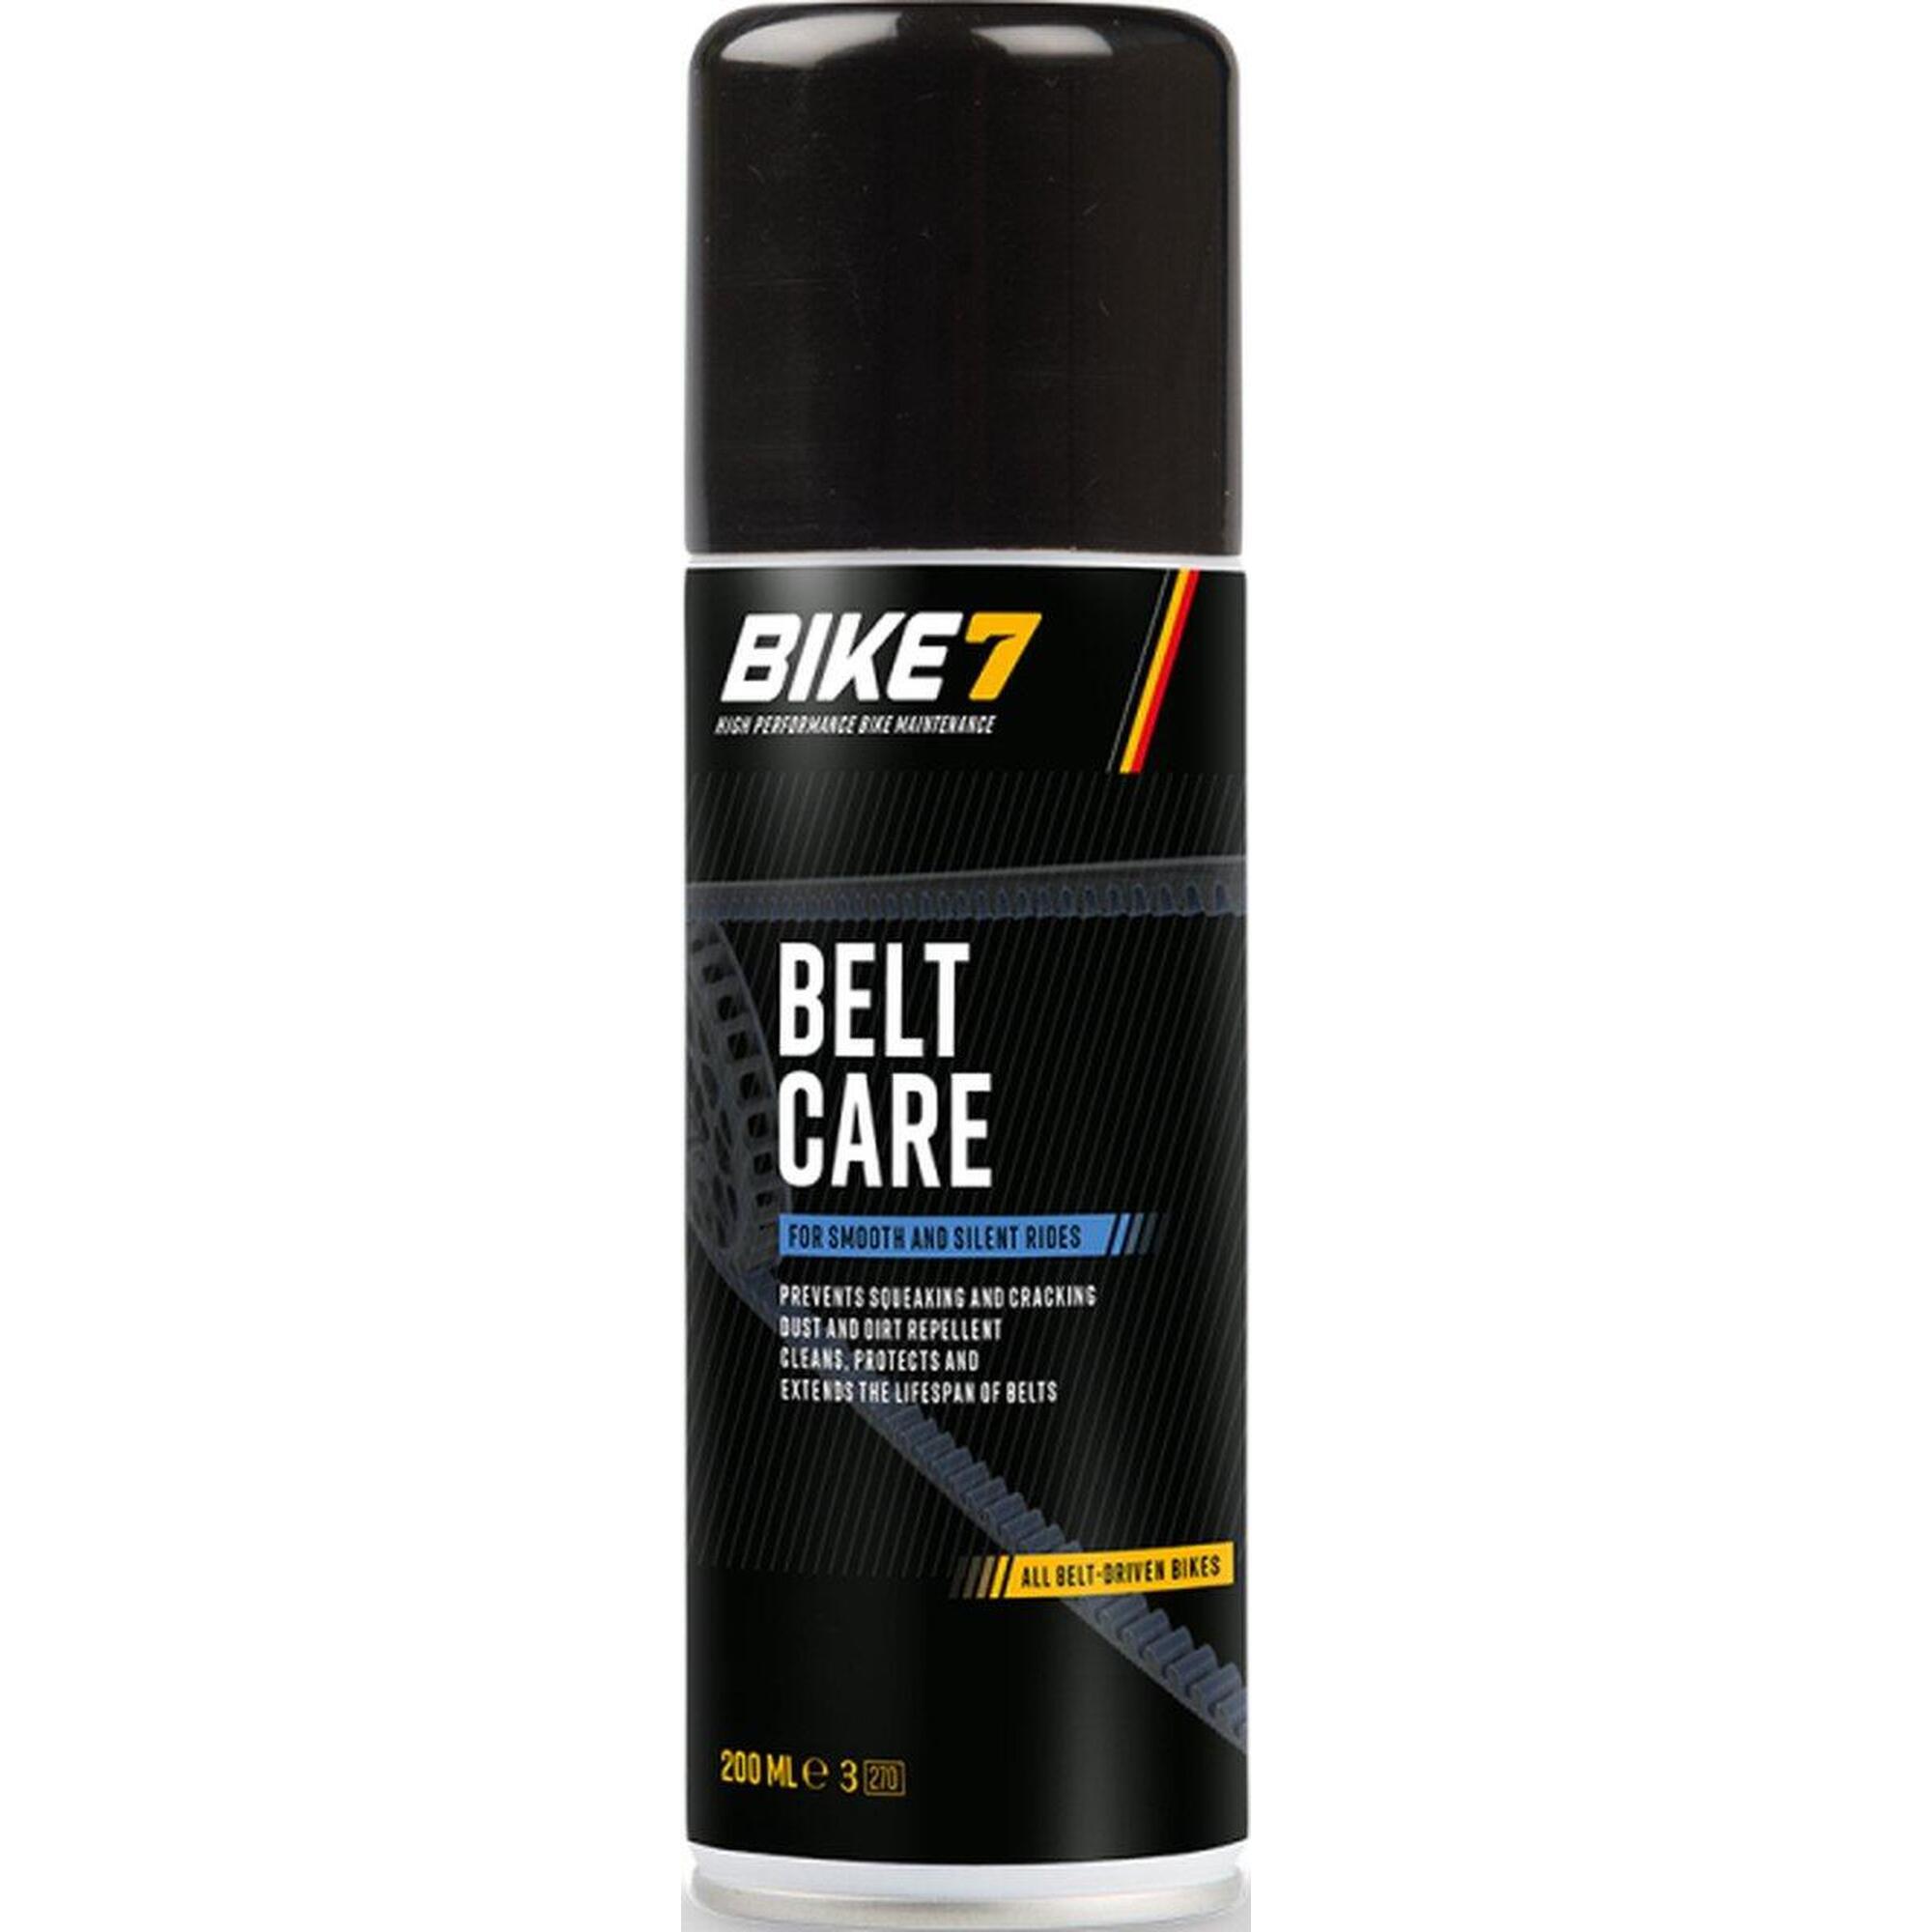 Fahrradzubehör Riemenpflege für alle Fahrräder - Bike7 Belt Care 200ml